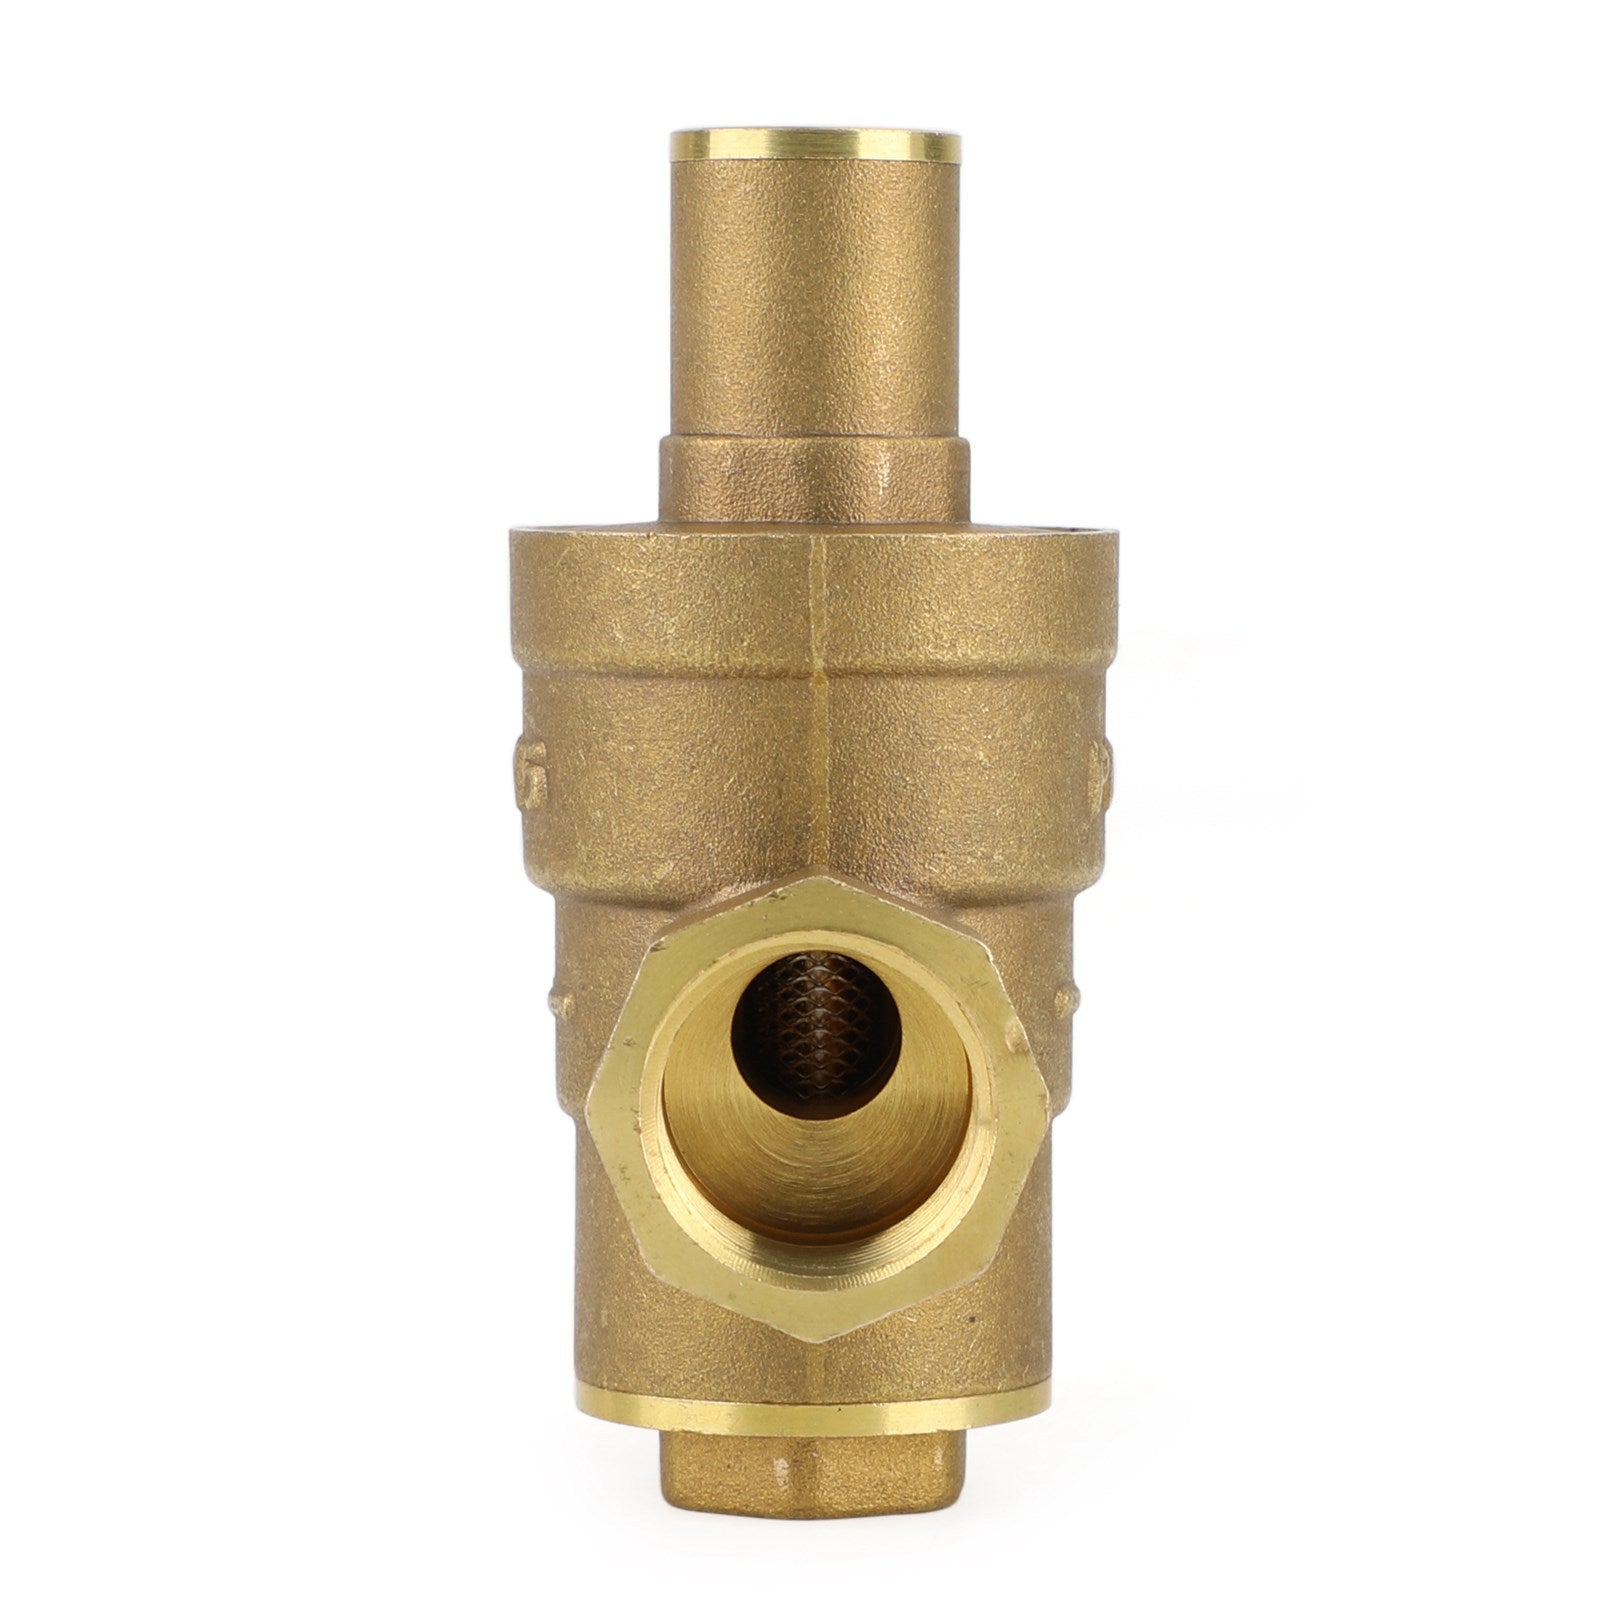 Reductor de regulador de presión de agua ajustable de latón DN15 1/2 "con medidor de calibre genérico